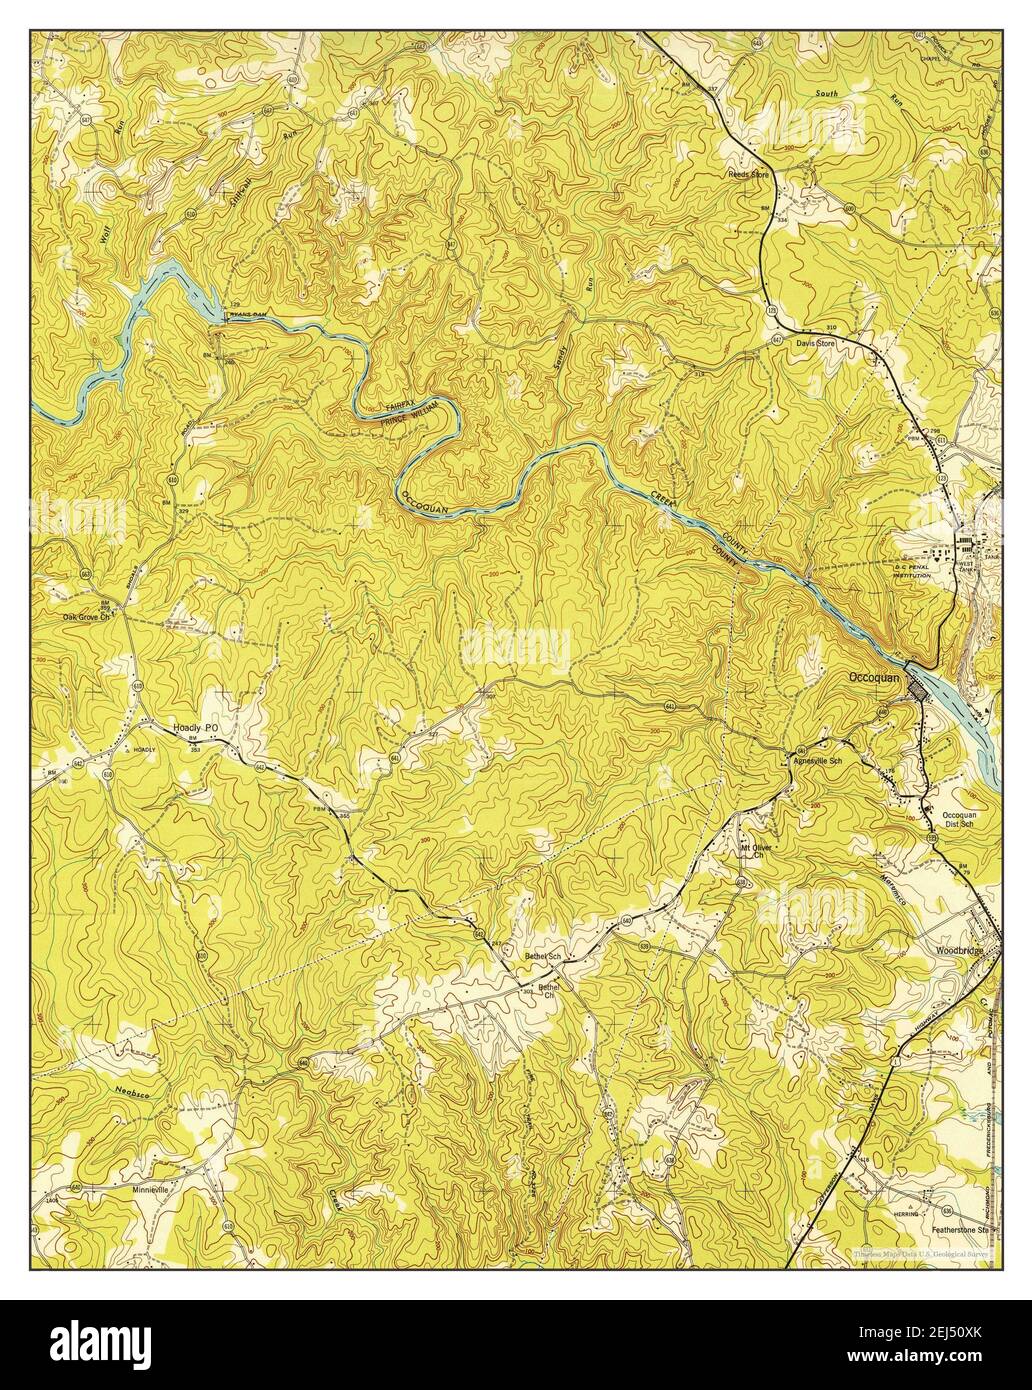 Occoquan, Virginia, Karte 1948, 1:24000, Vereinigte Staaten von Amerika von Timeless Maps, Daten U.S. Geological Survey Stockfoto